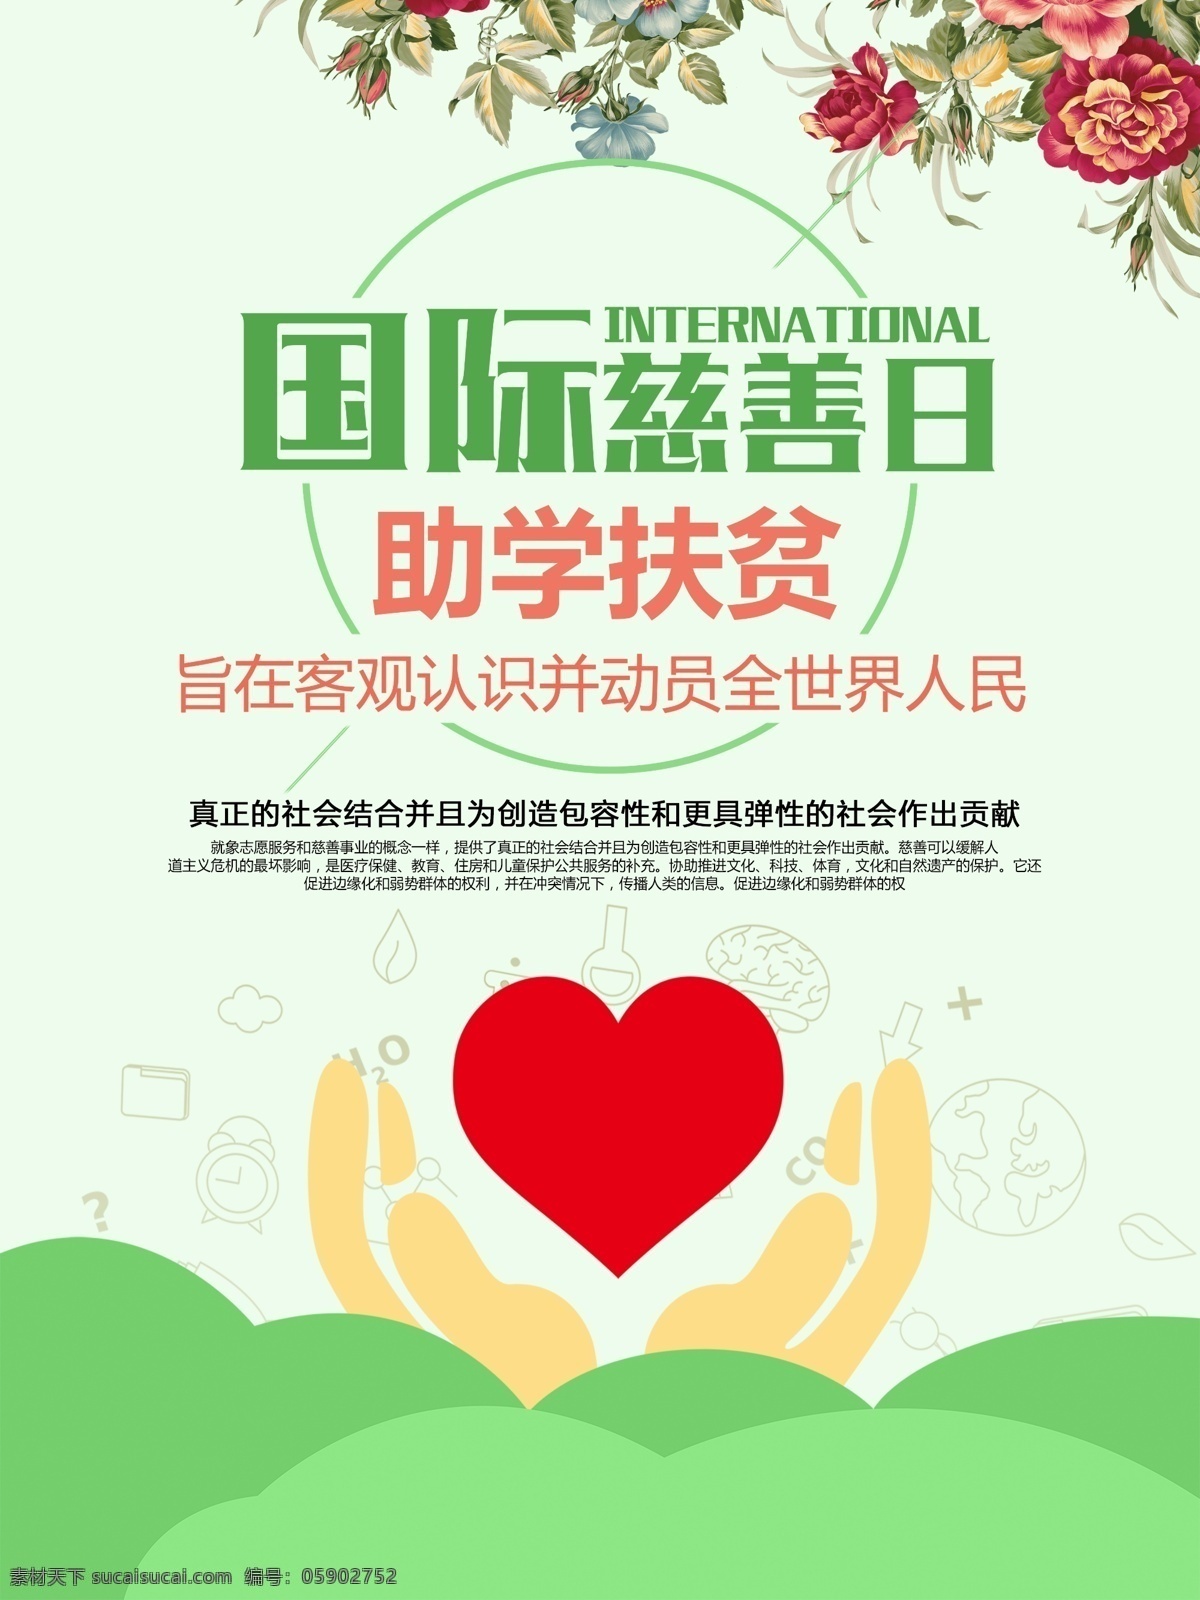 国际慈善日 助学扶贫 爱心 手势 扁平化 卡通 草地 波浪 客观认识 动员全世界 人民 花朵 和谐中国